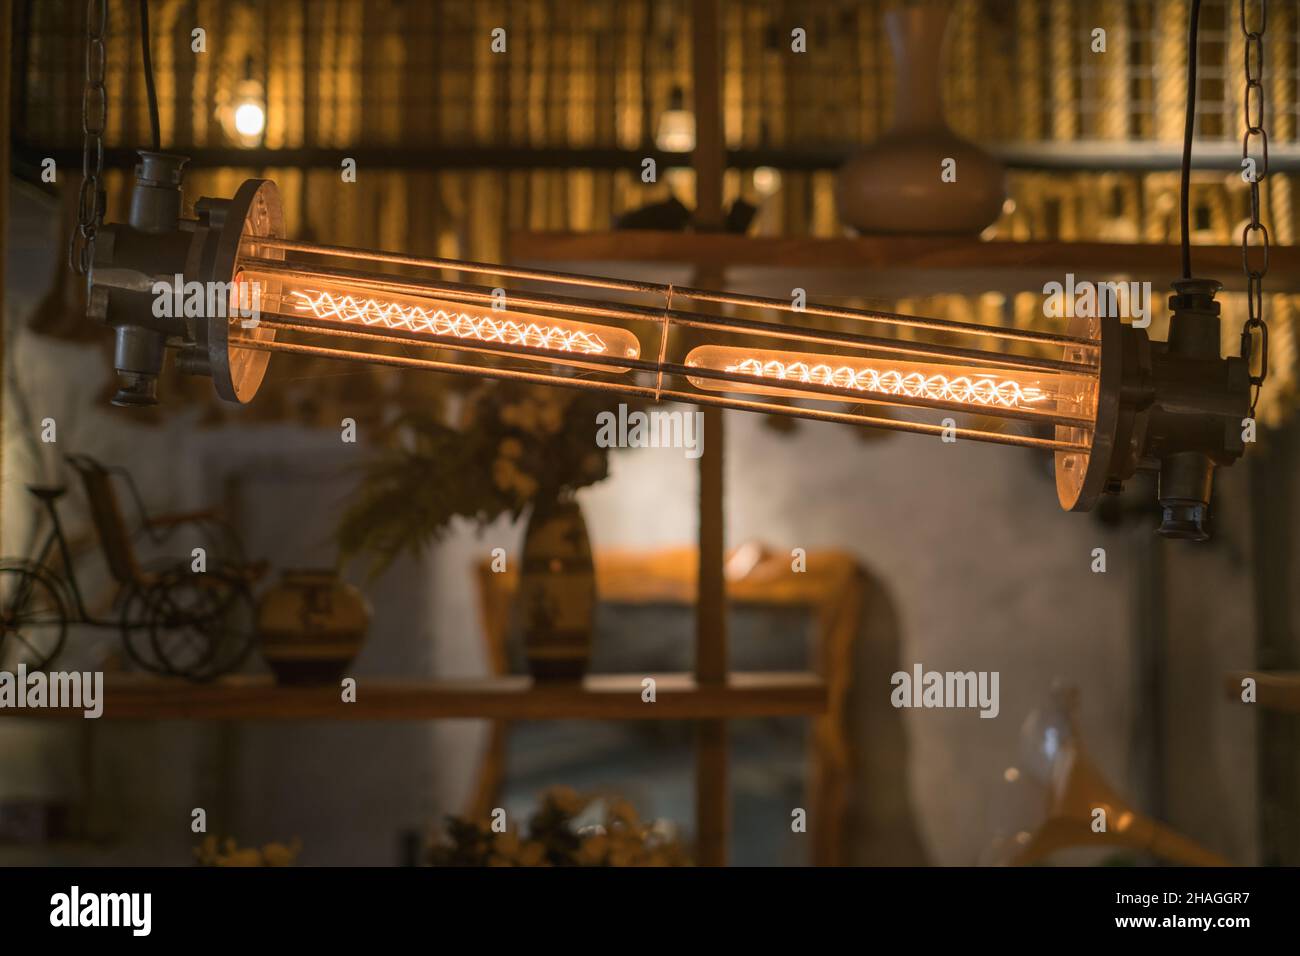 Steampunk stile architettonico elemento di design di interni. Illuminazione apparecchiature illuminate. Foto di alta qualità Foto Stock